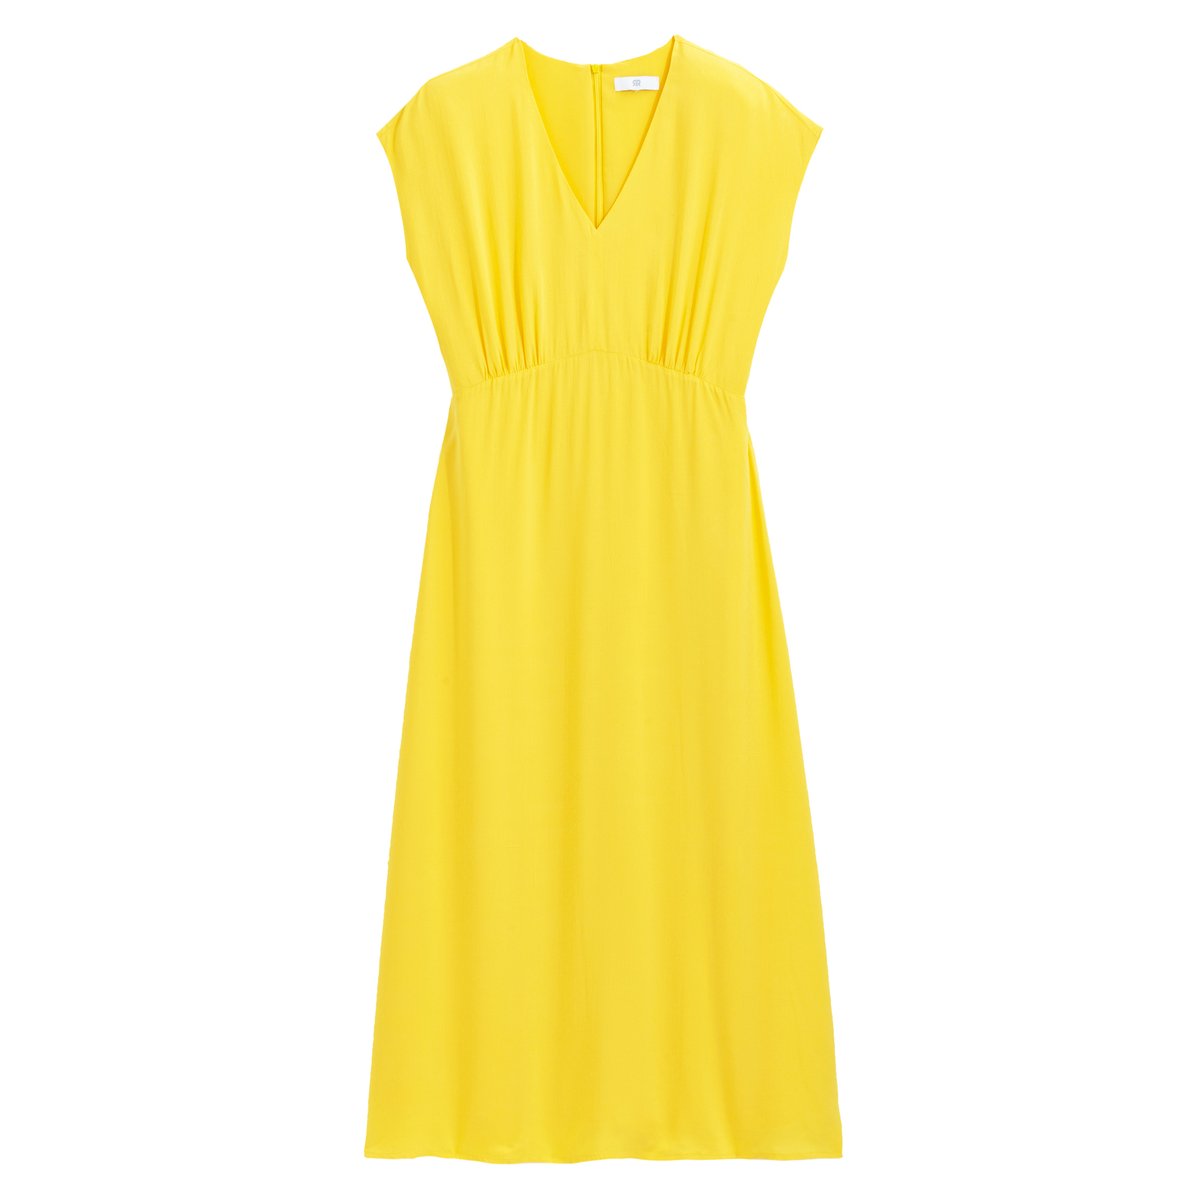 Платье La Redoute Длинное без рукавов 36 (FR) - 42 (RUS) желтый, размер 36 (FR) - 42 (RUS) Длинное без рукавов 36 (FR) - 42 (RUS) желтый - фото 5